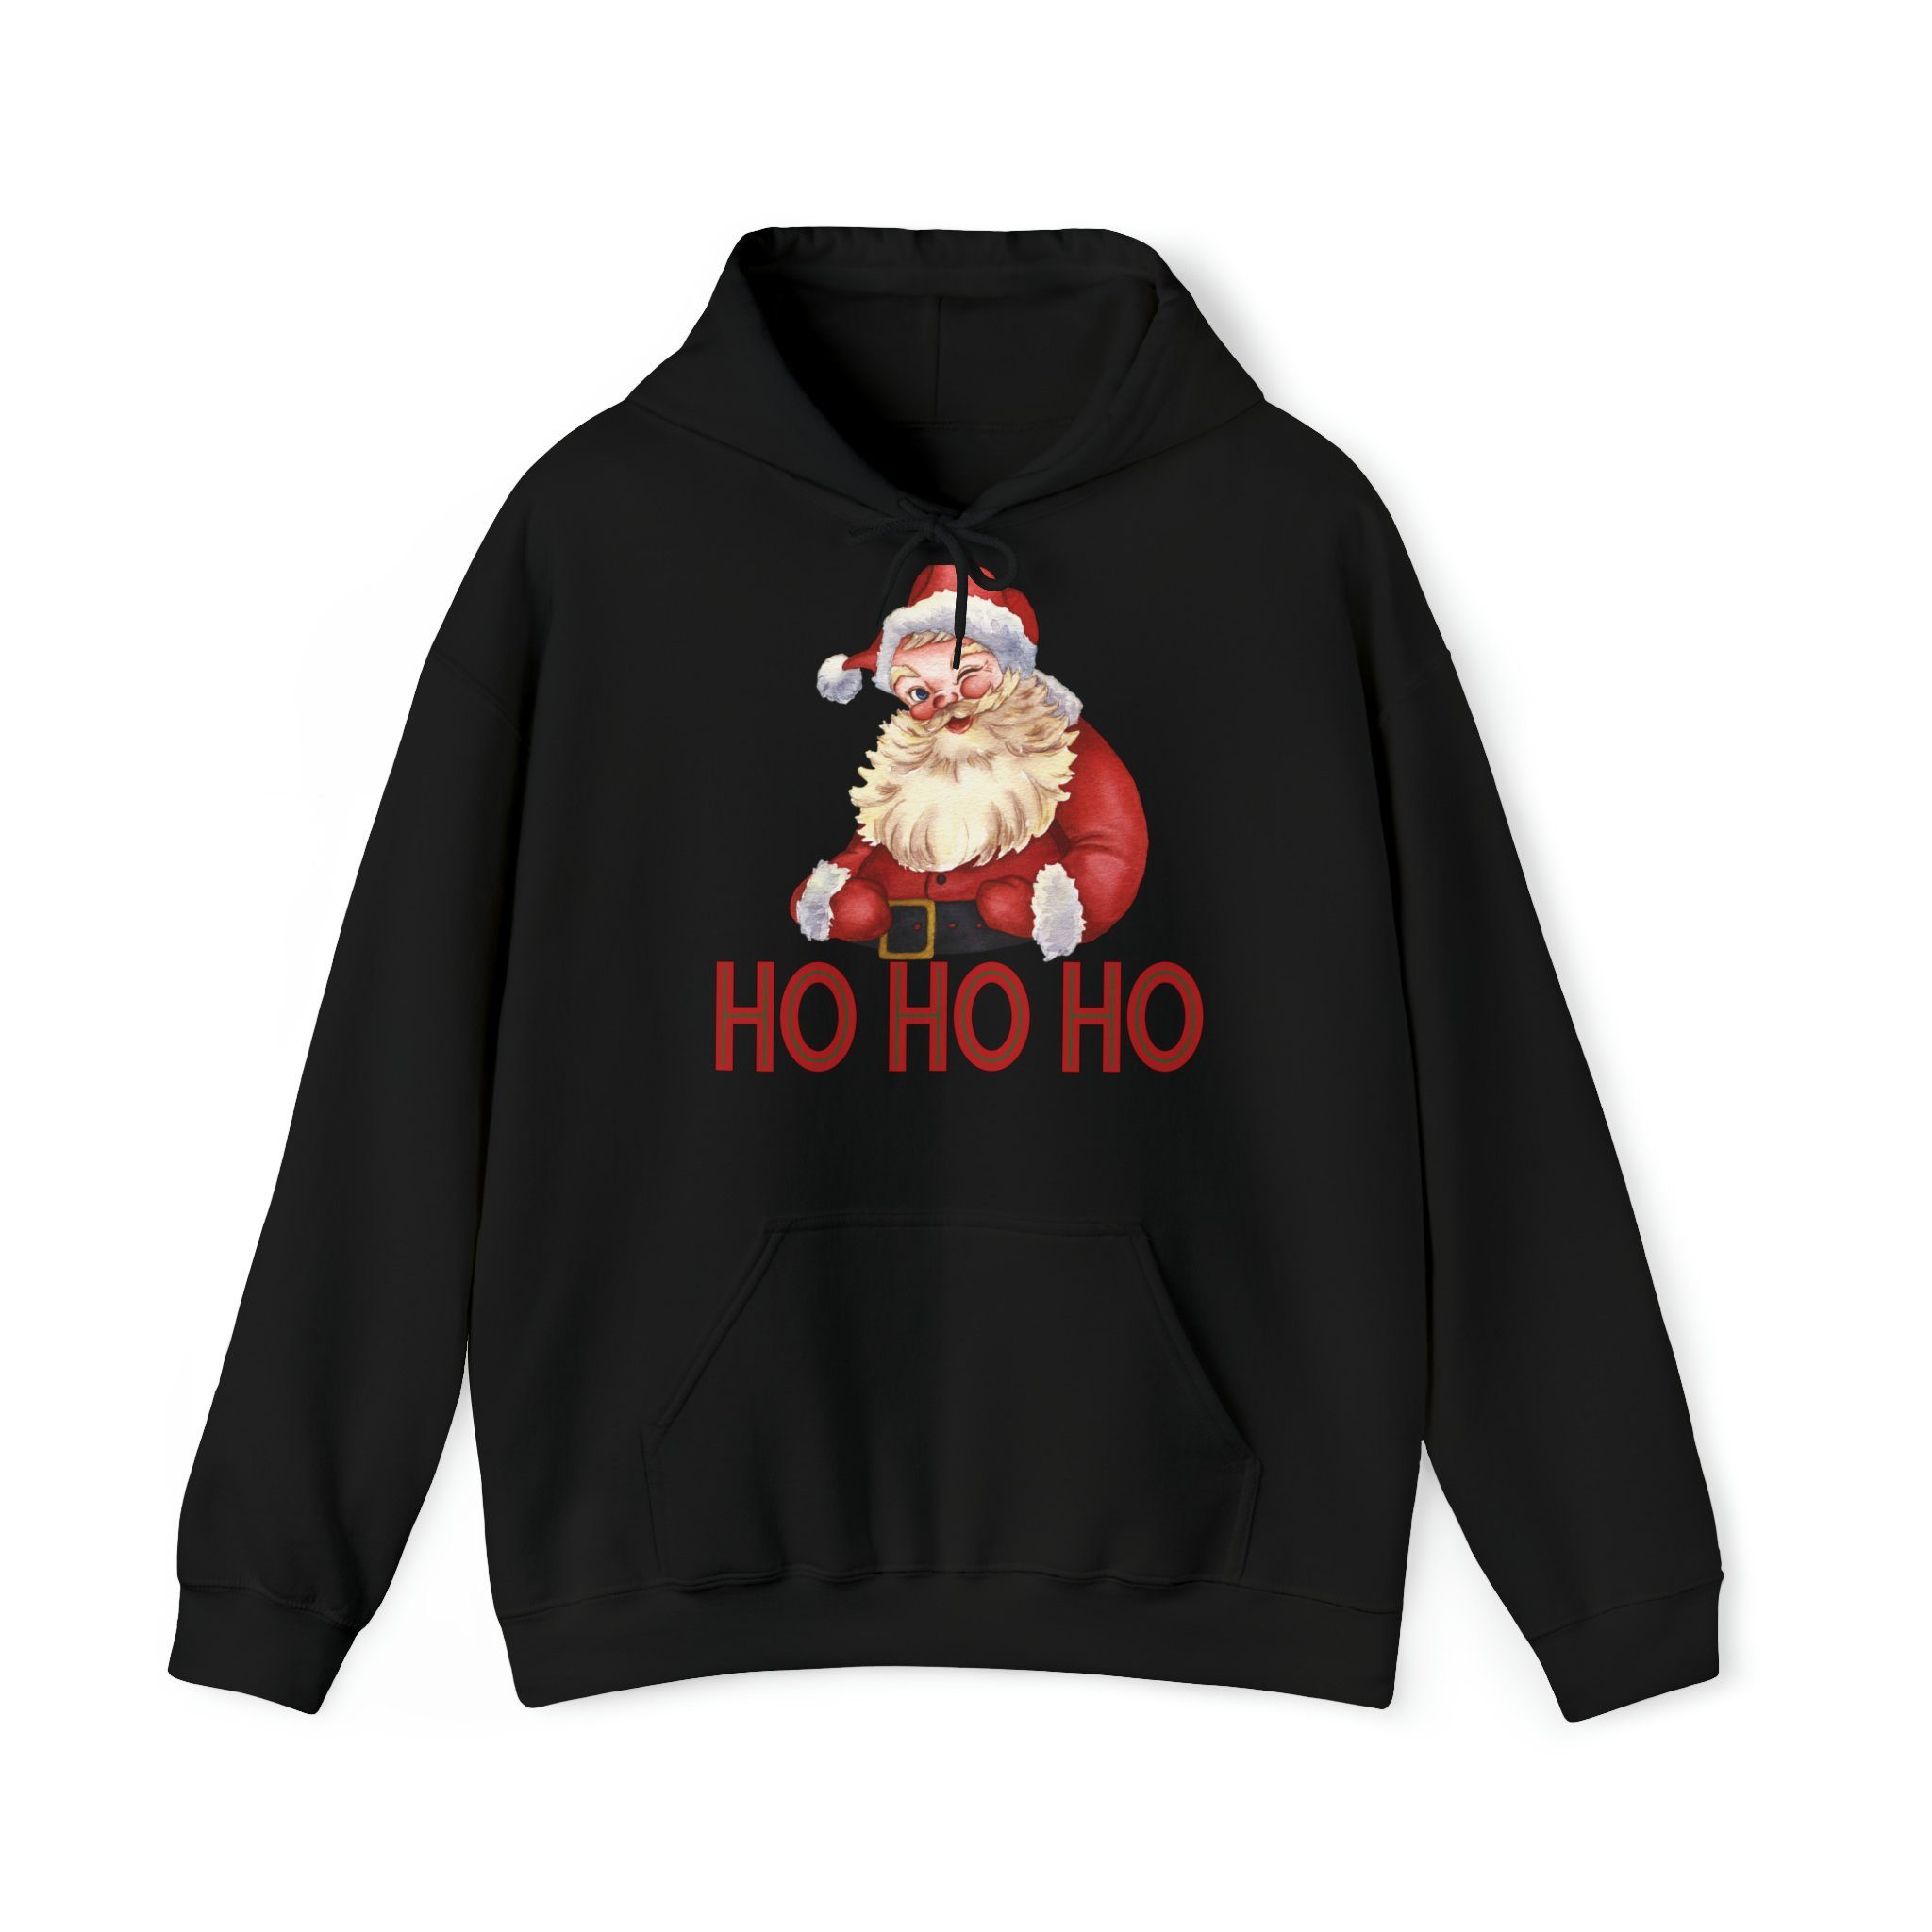 Quality Elegance Weihnachtssweatshirt Santa Christmas Hoodie, HO HO HO Christmas Sweatshirt Black